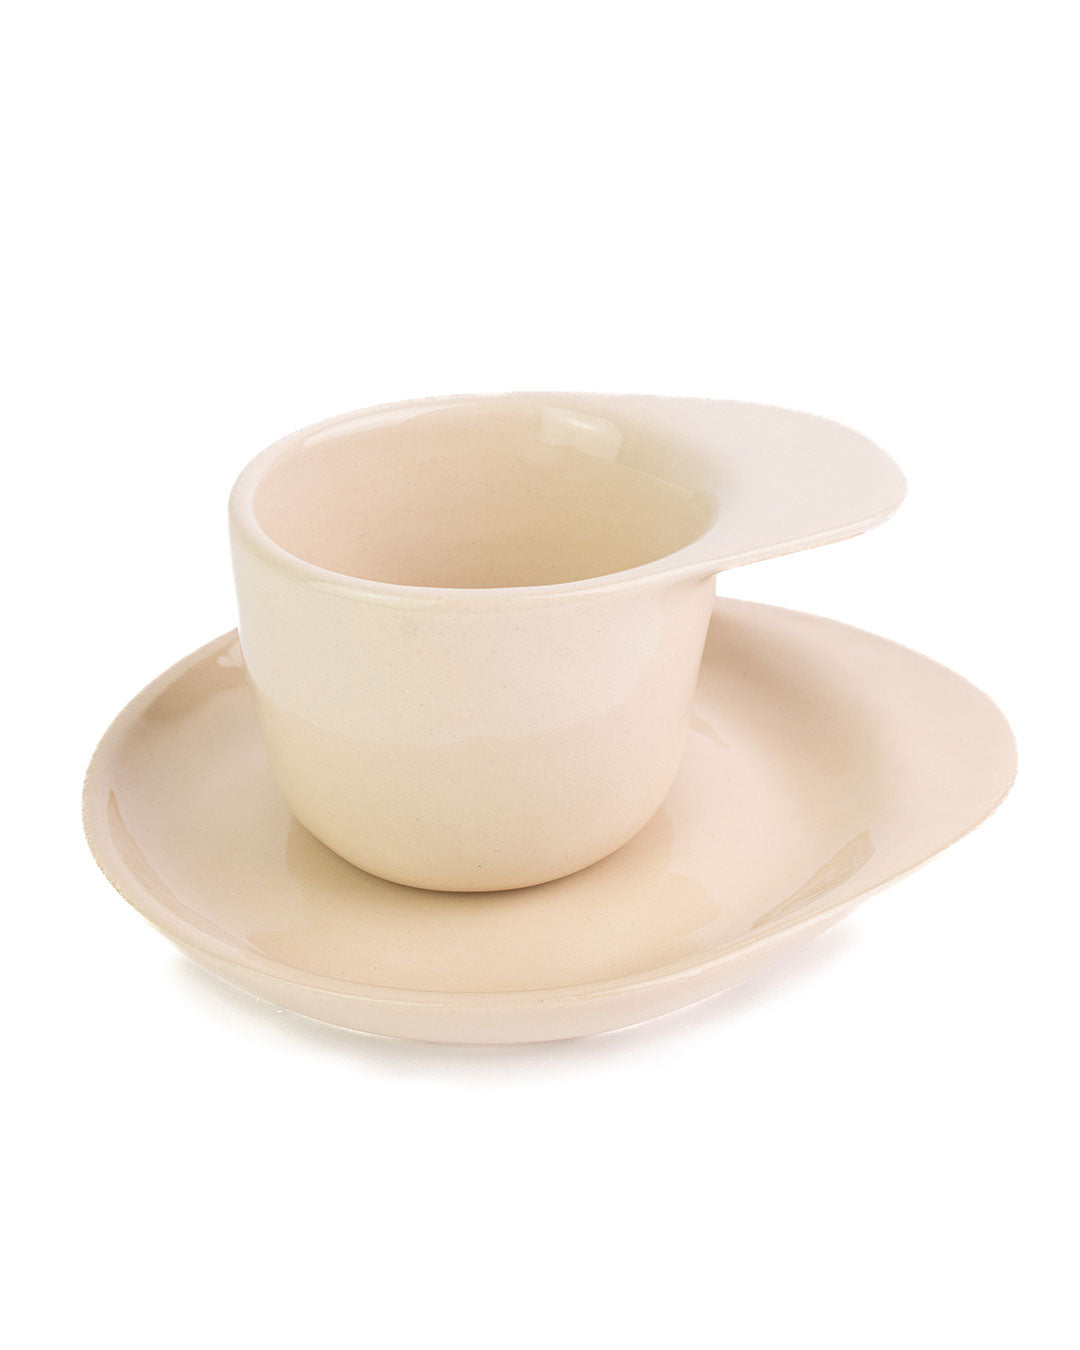 Ameno Tea Cup beige with Plate_pottery_nu ceramica